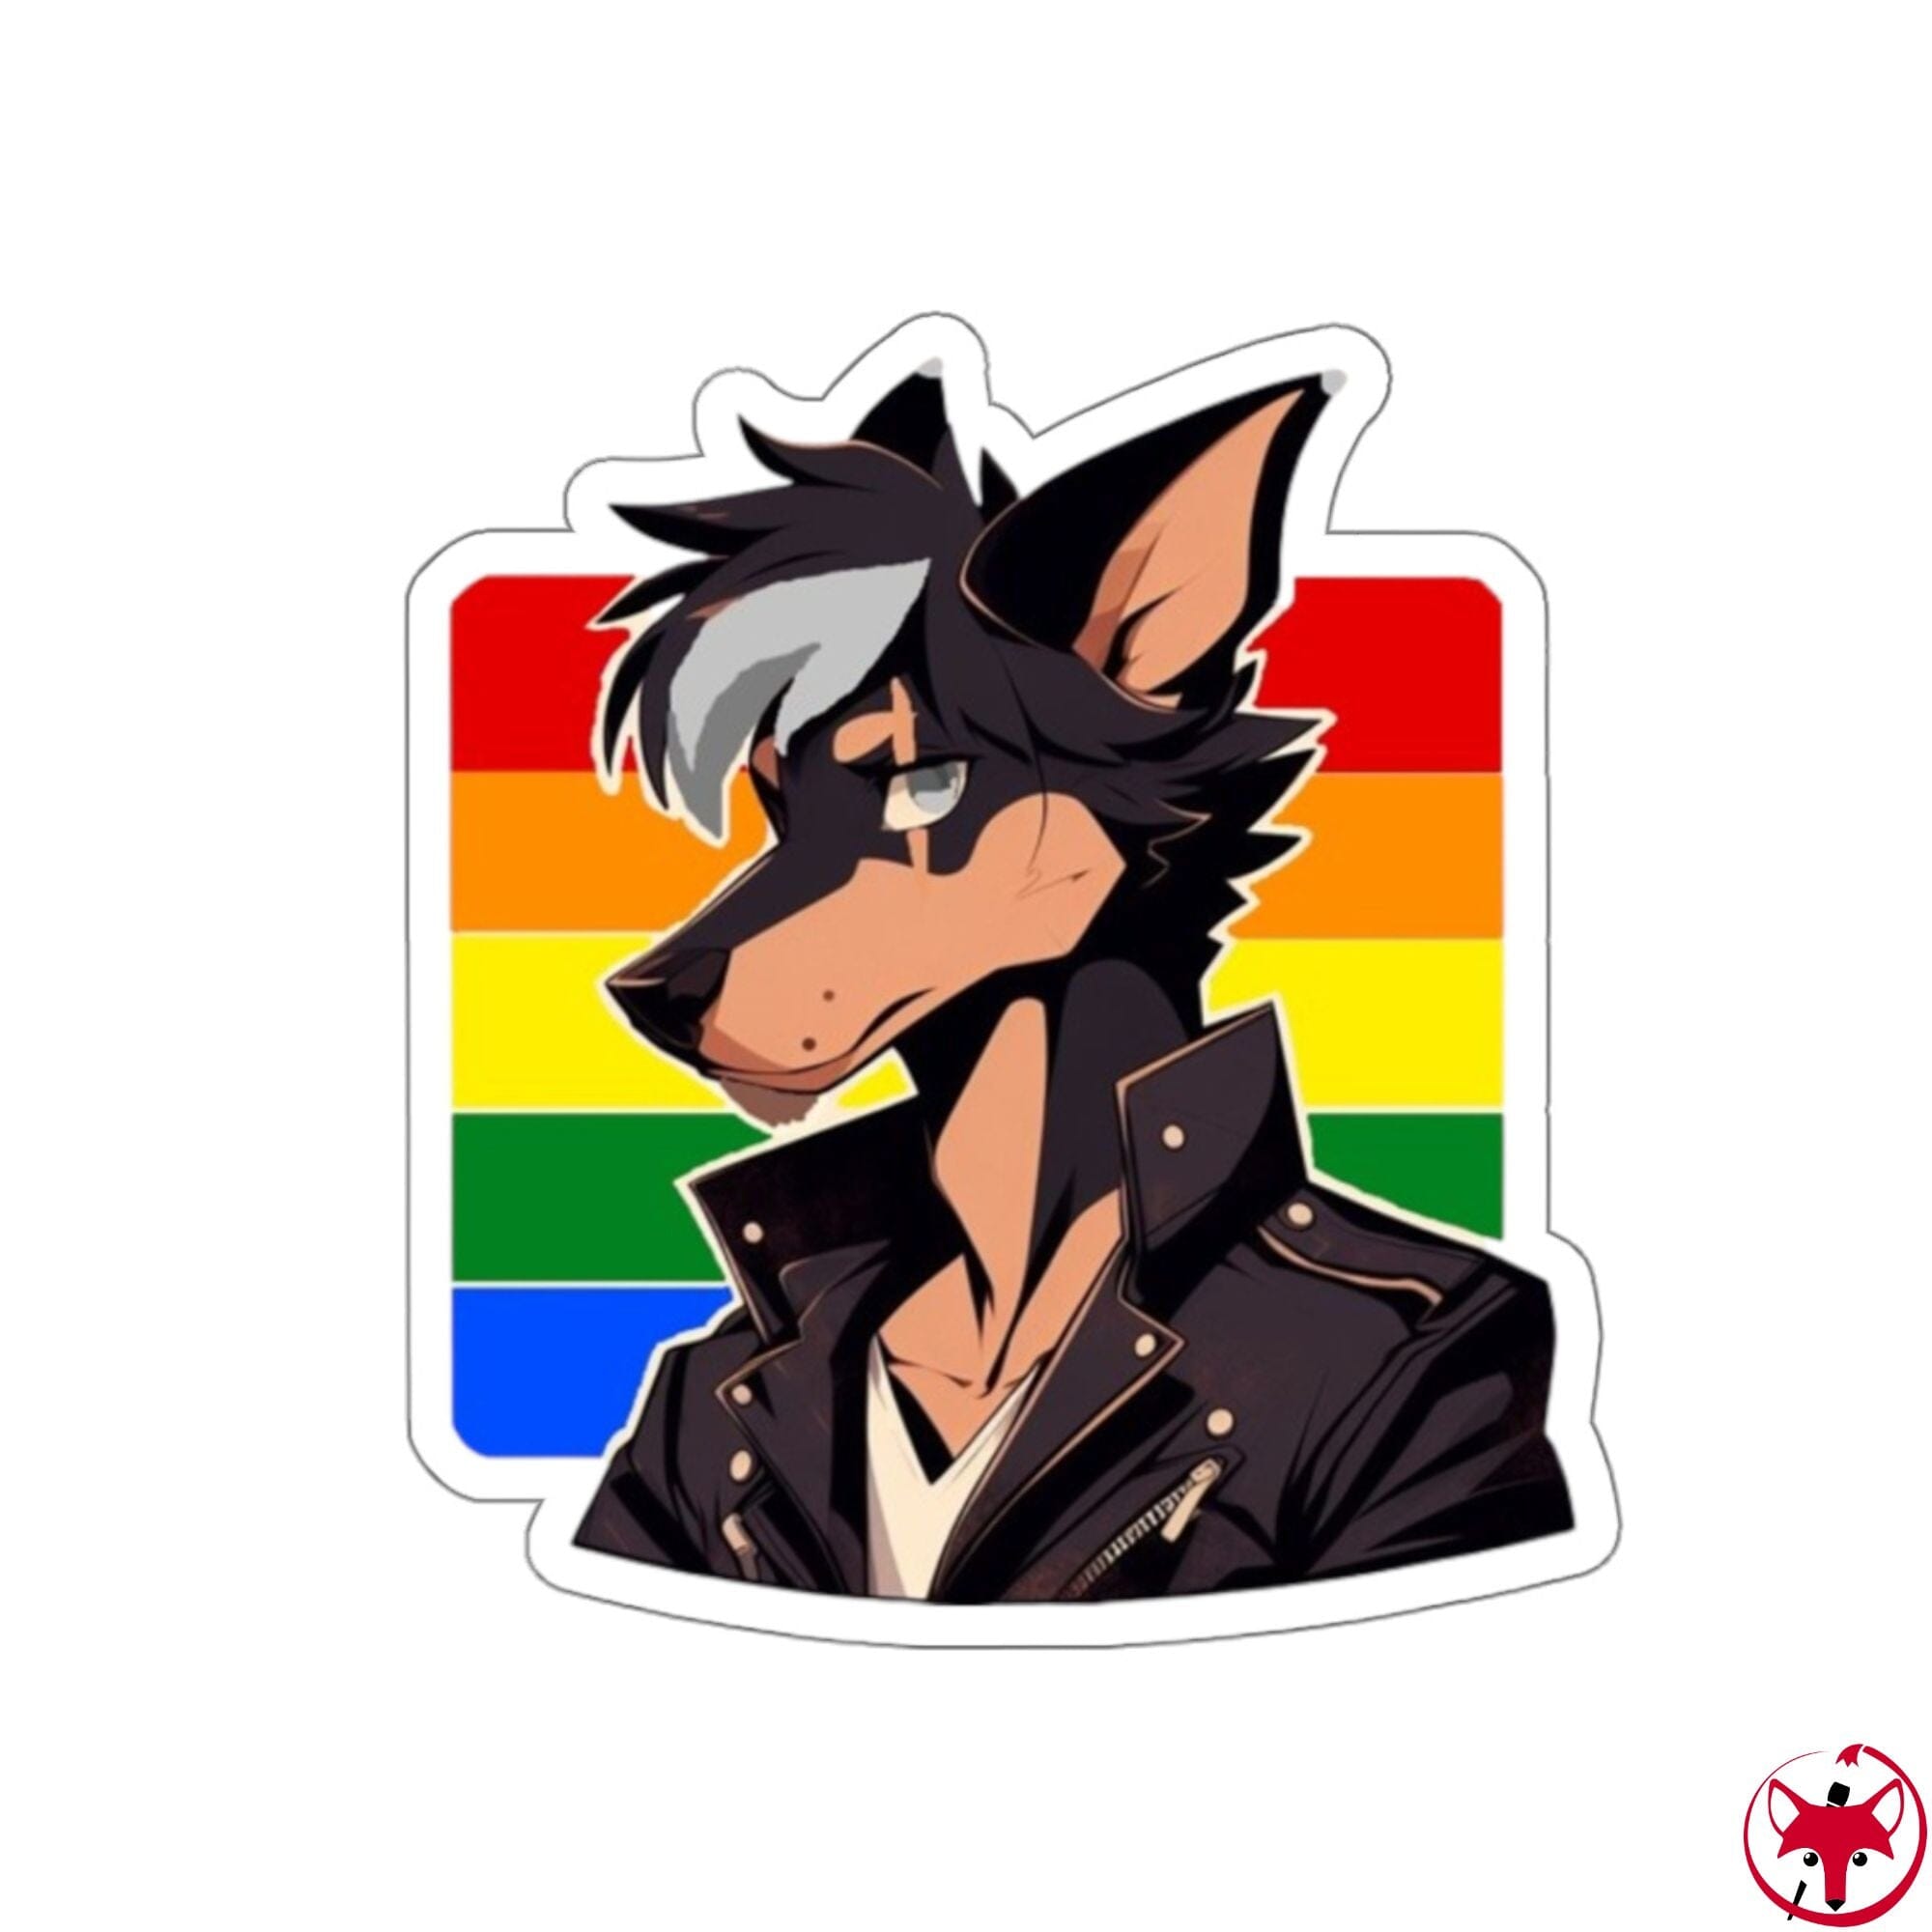 MrMlemphis - Homosexual Flag - Sticker Sticker AFLT - MrMlemphis 